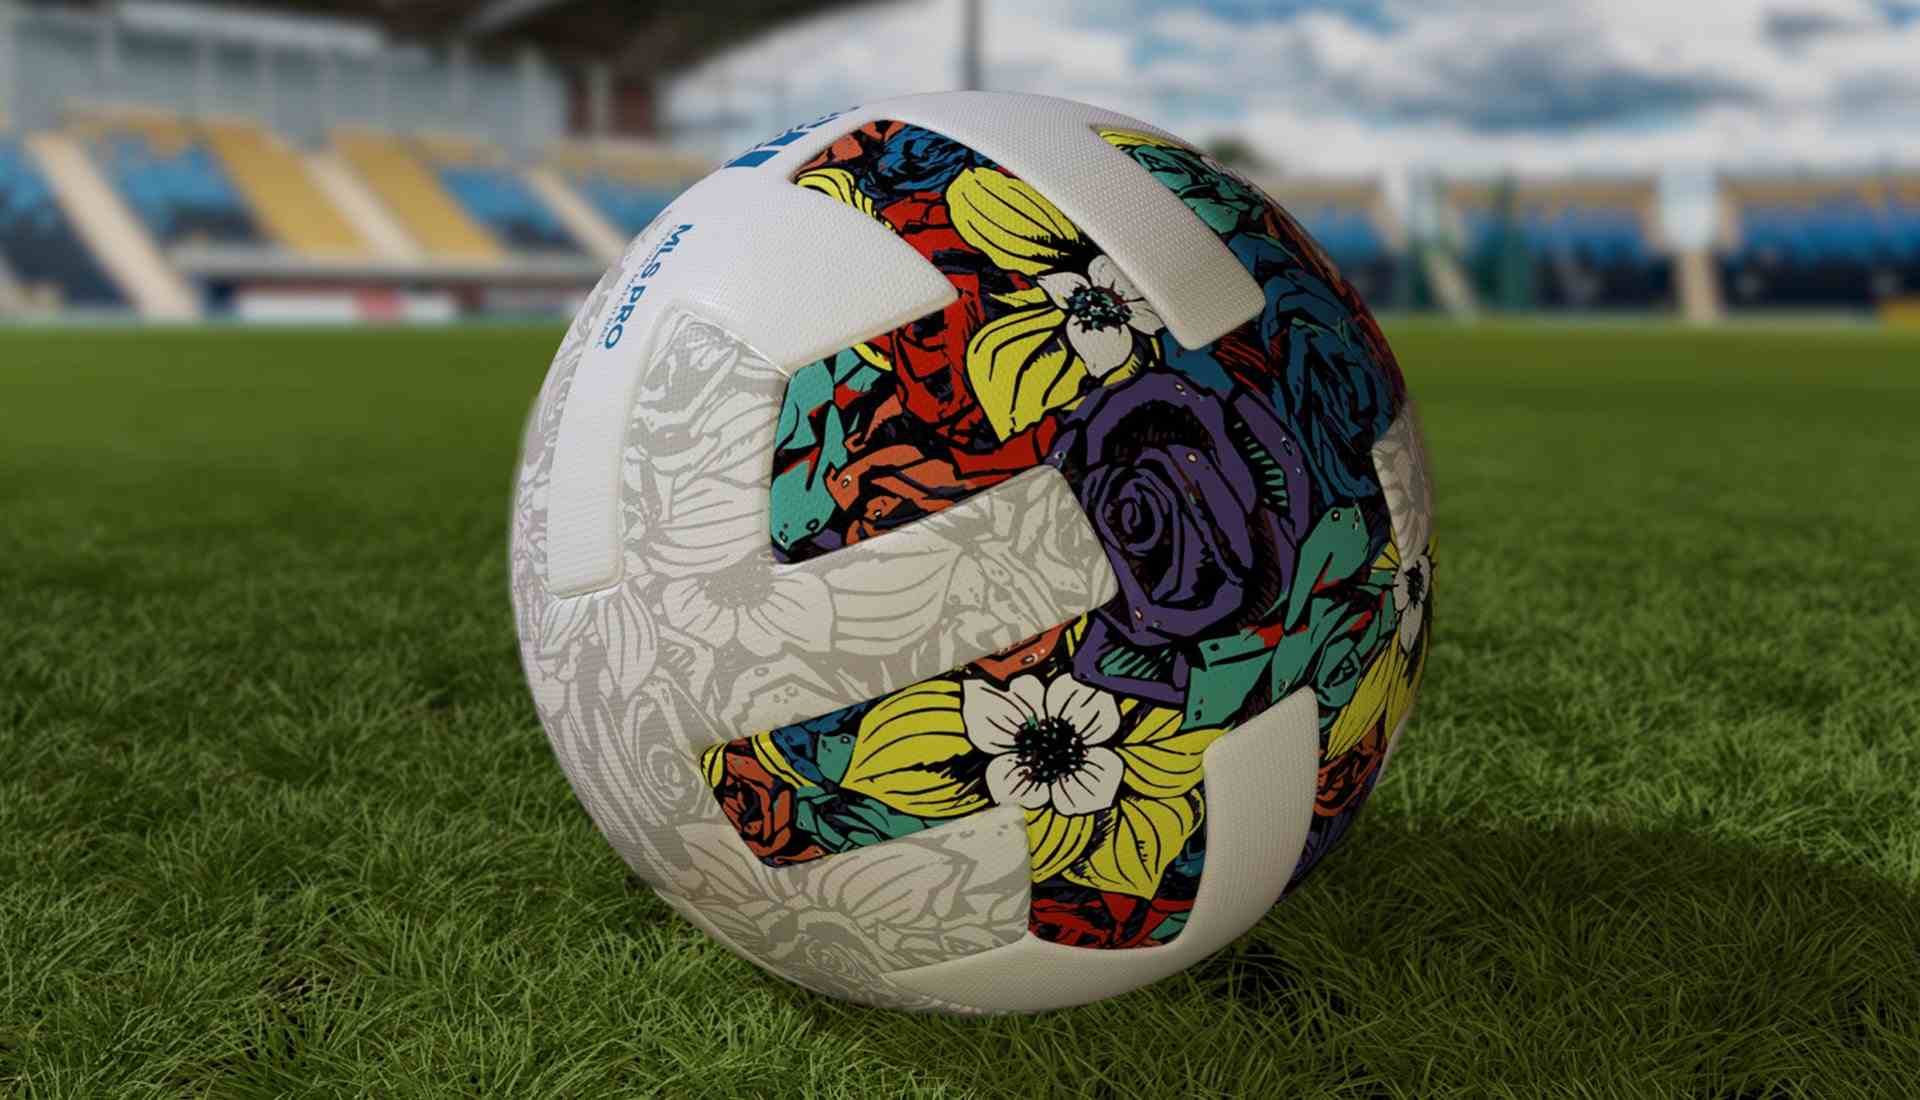 Balón oficial adidas para la MLS, temporada 2022